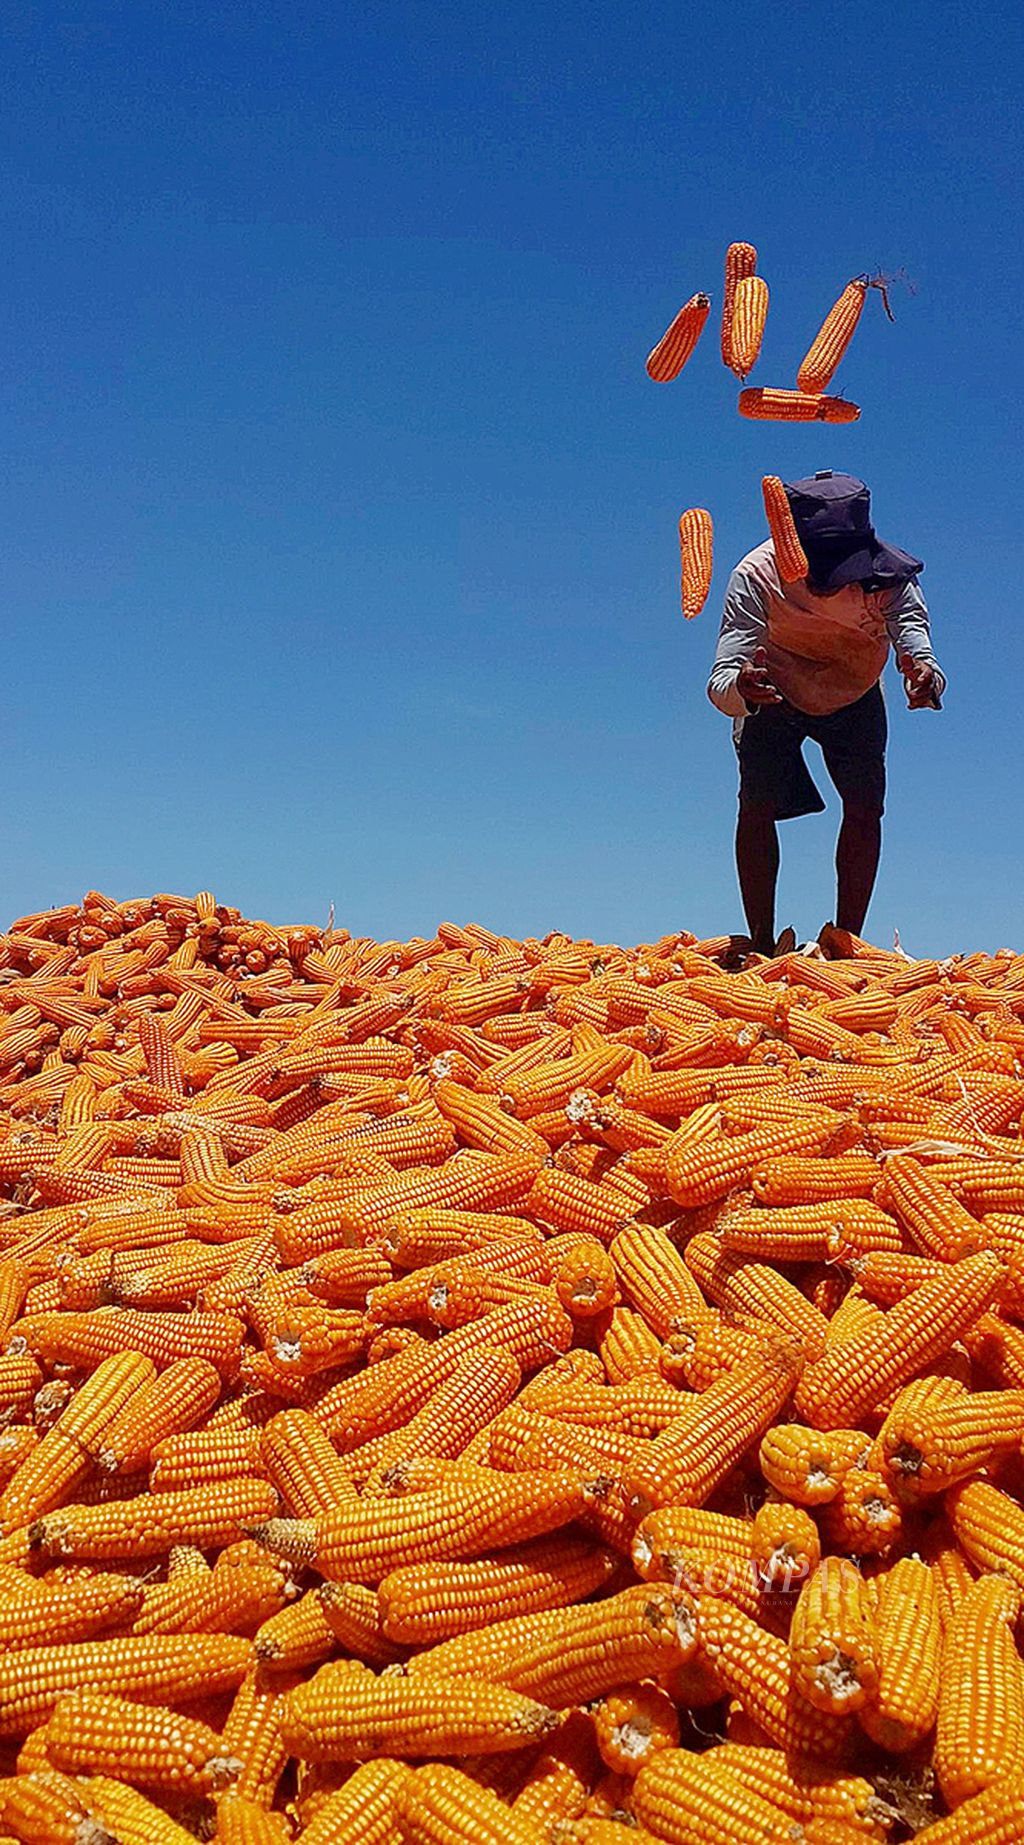 Buruh memanen jagung di kawasan Manggelewa, Kabupaten Dompu, Nusa Tenggara Barat, Kamis (8/4/2015). Warga mengeluhkan harga jual jagung yang dinilai rendah, yaitu Rp 1.800 per kilogram untuk jagung basah. Mereka berharap harga jual jagung dapat naik sehingga bisa menutup biaya tanam dan panen jagung.